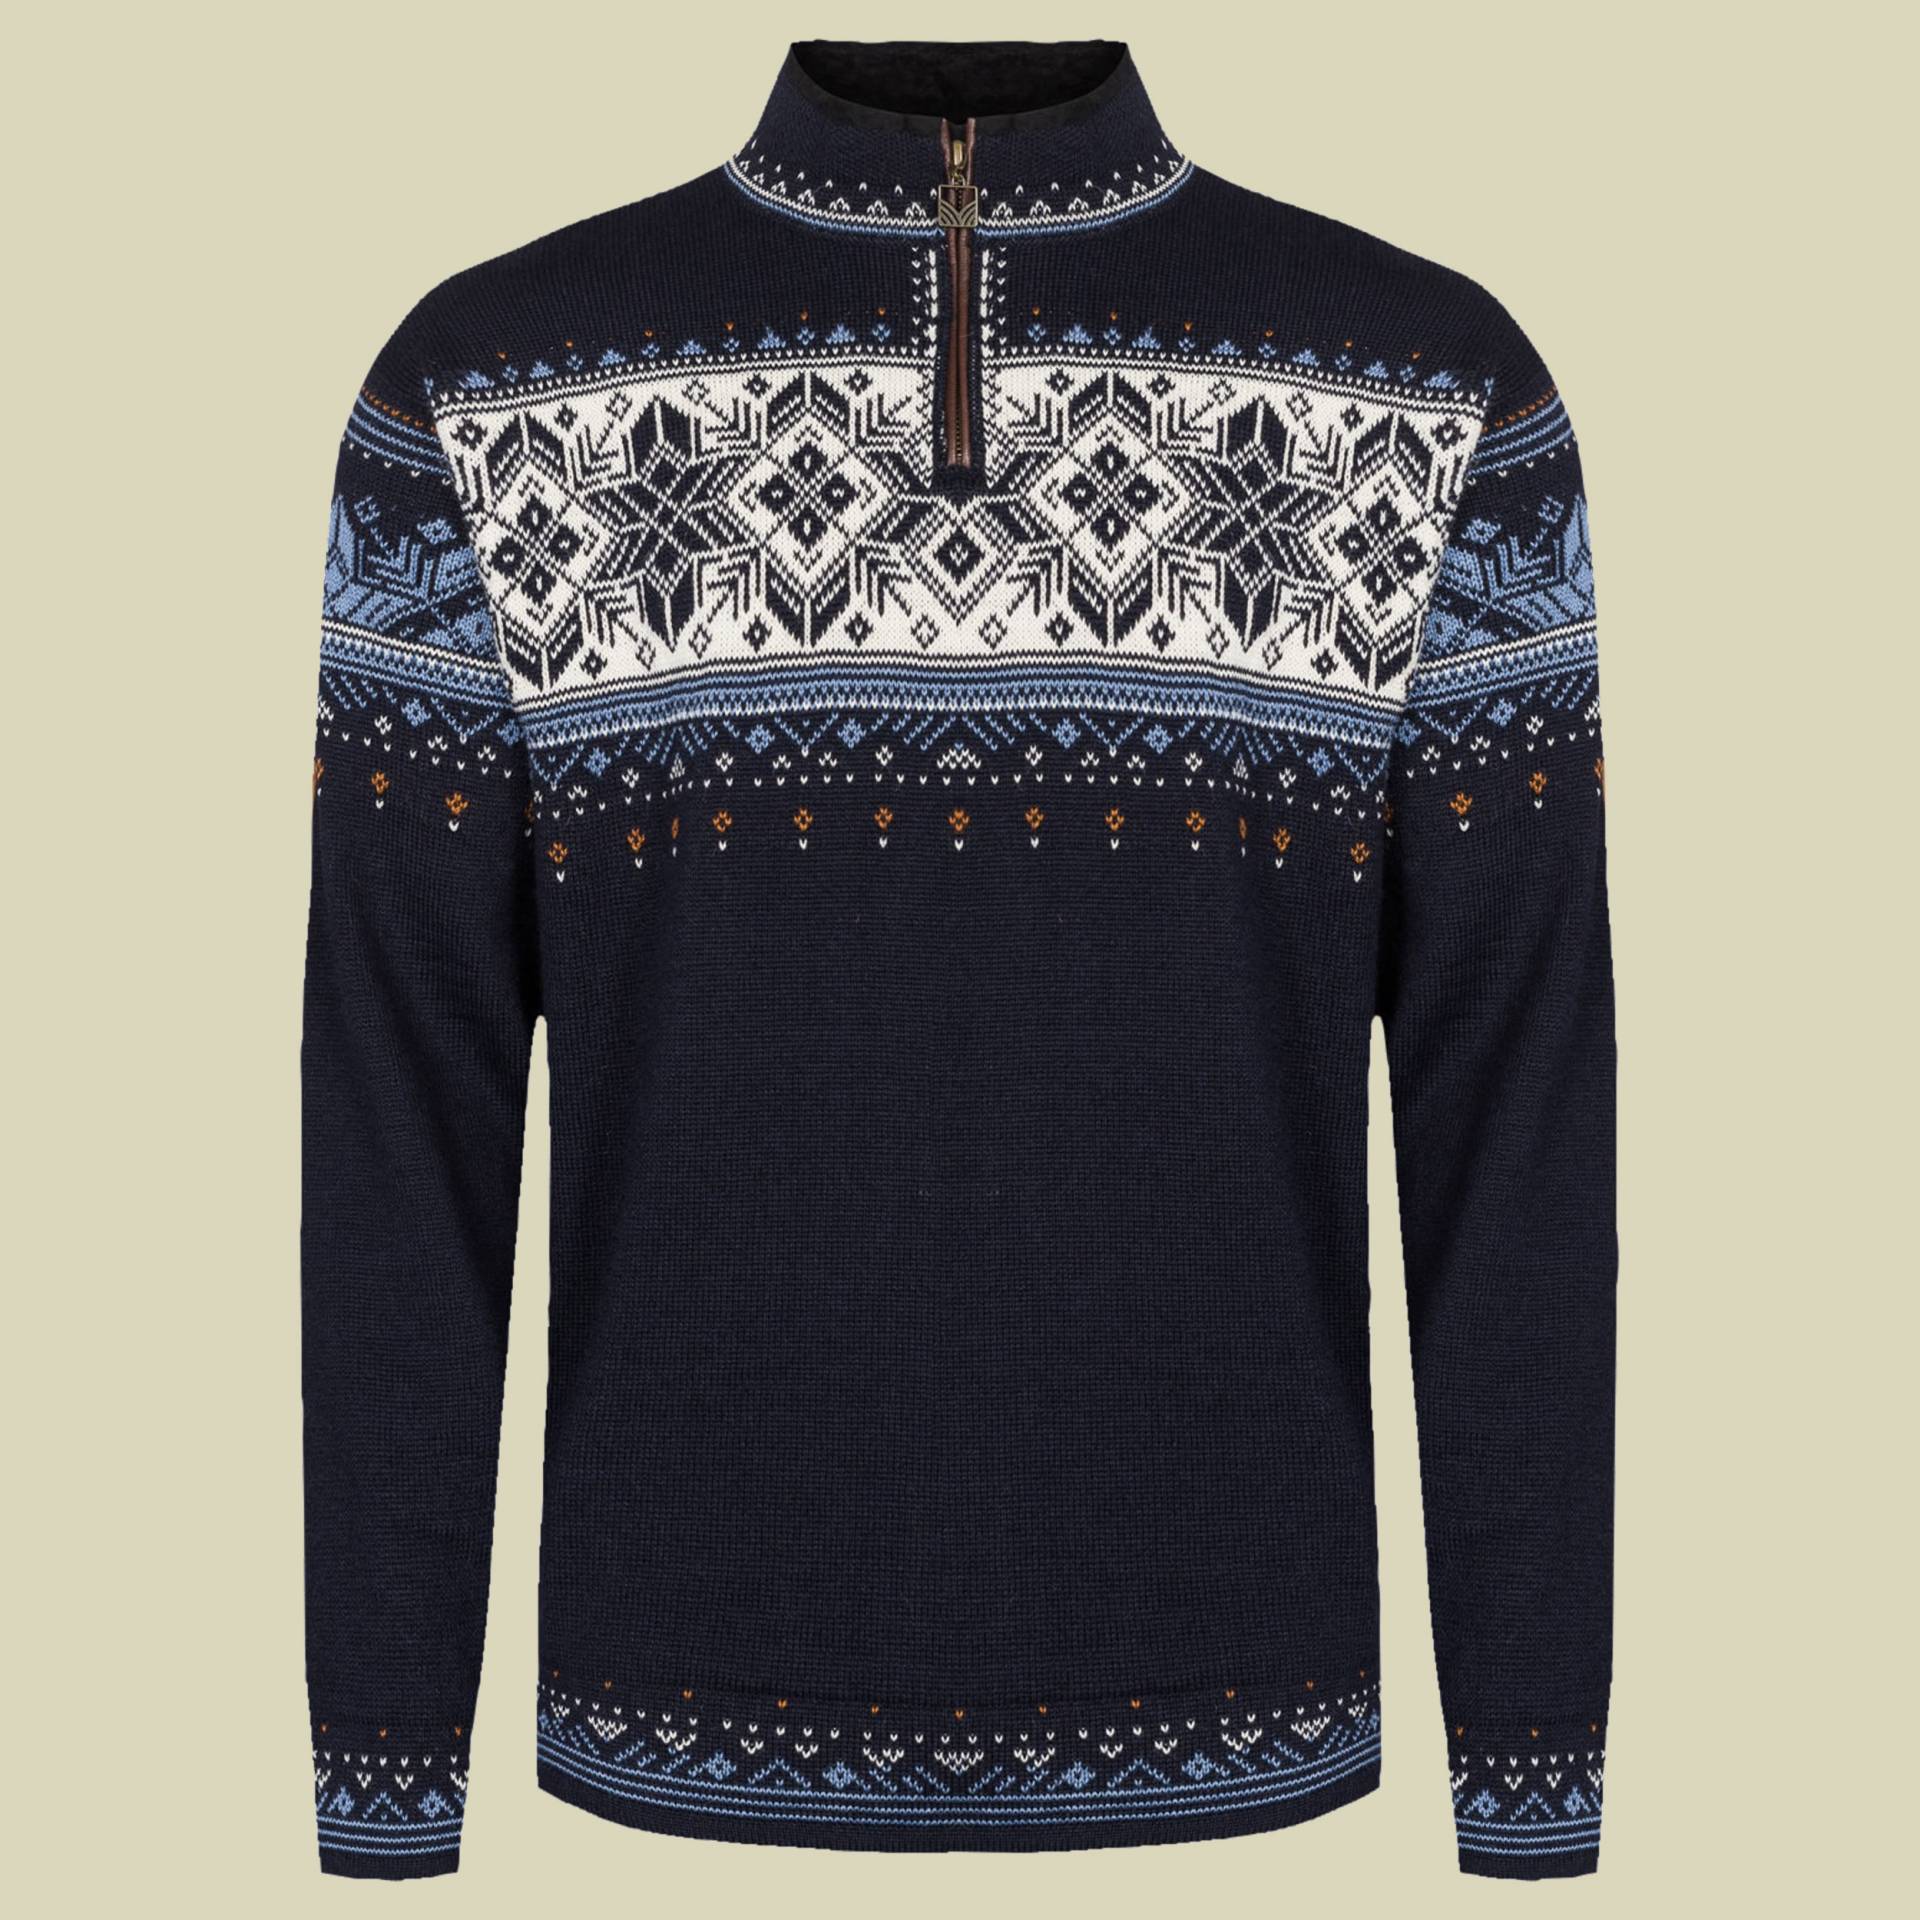 Blyfjell Unisex Sweater mehrfarbig 1 Größe XXL Farbe navy-blue shadow-off white von Dale of Norway